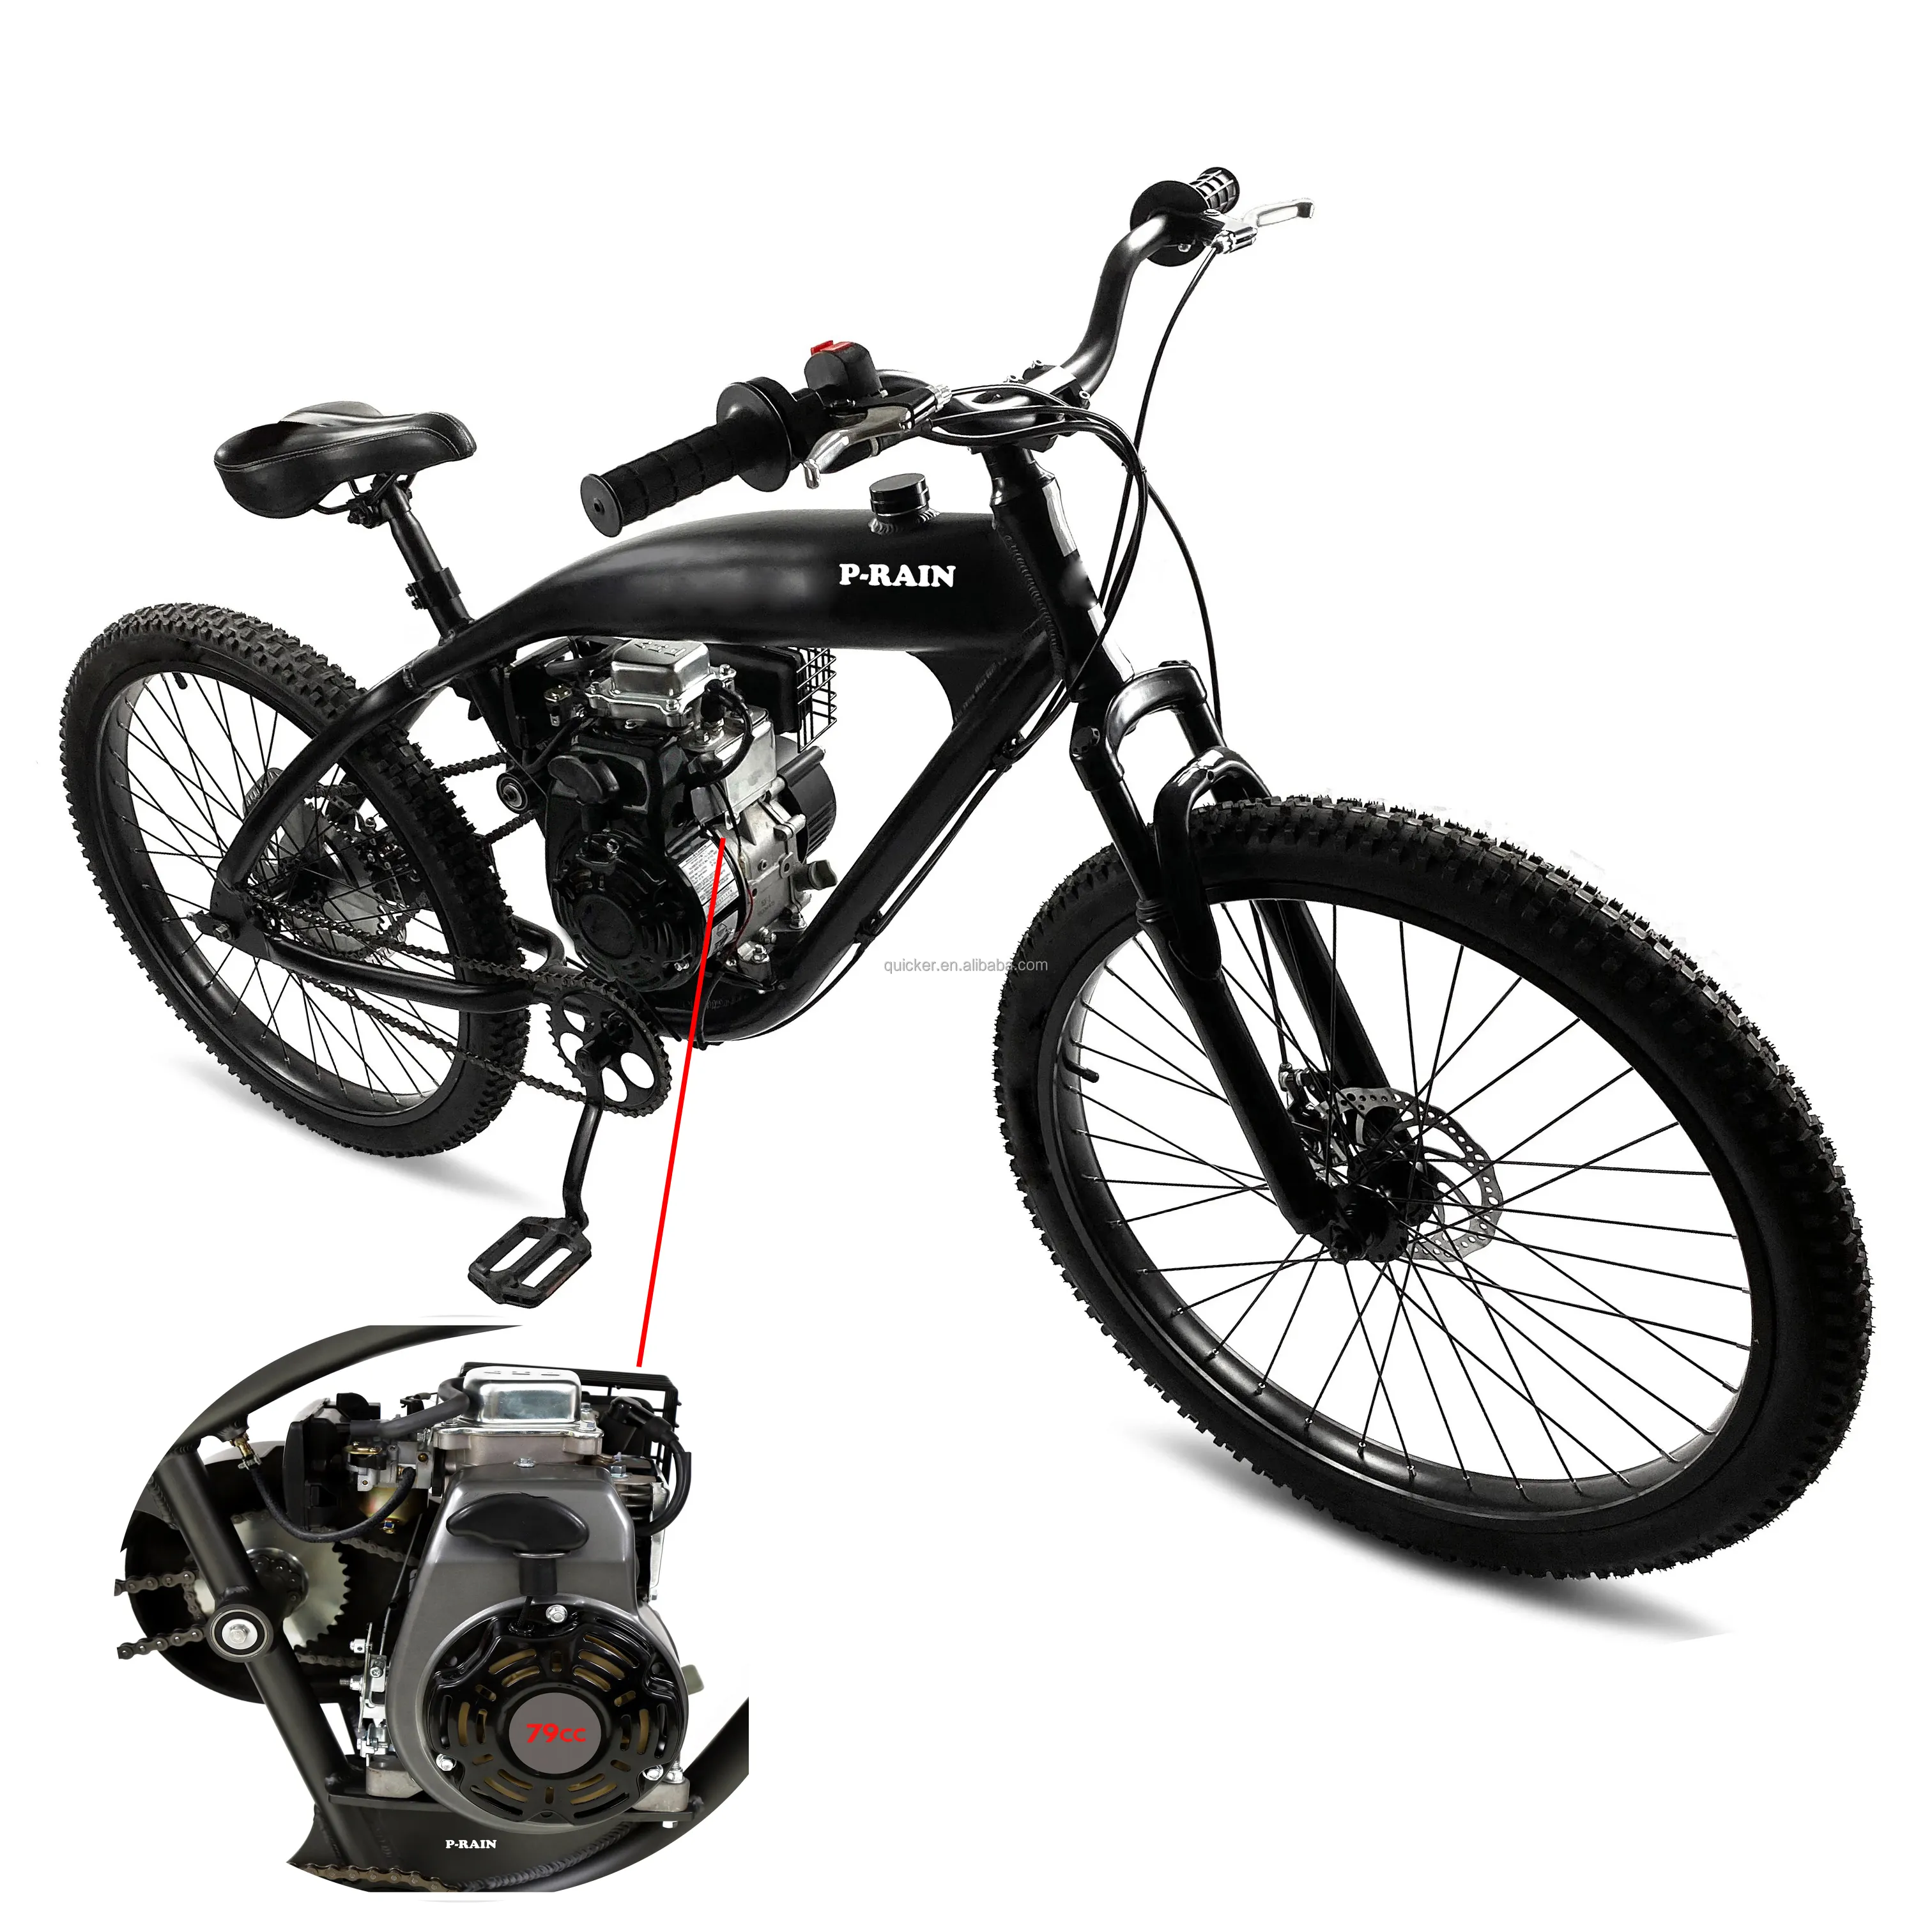 Motor de freno de disco para bicicleta, motor de gasolina de 4 tiempos, 79cc